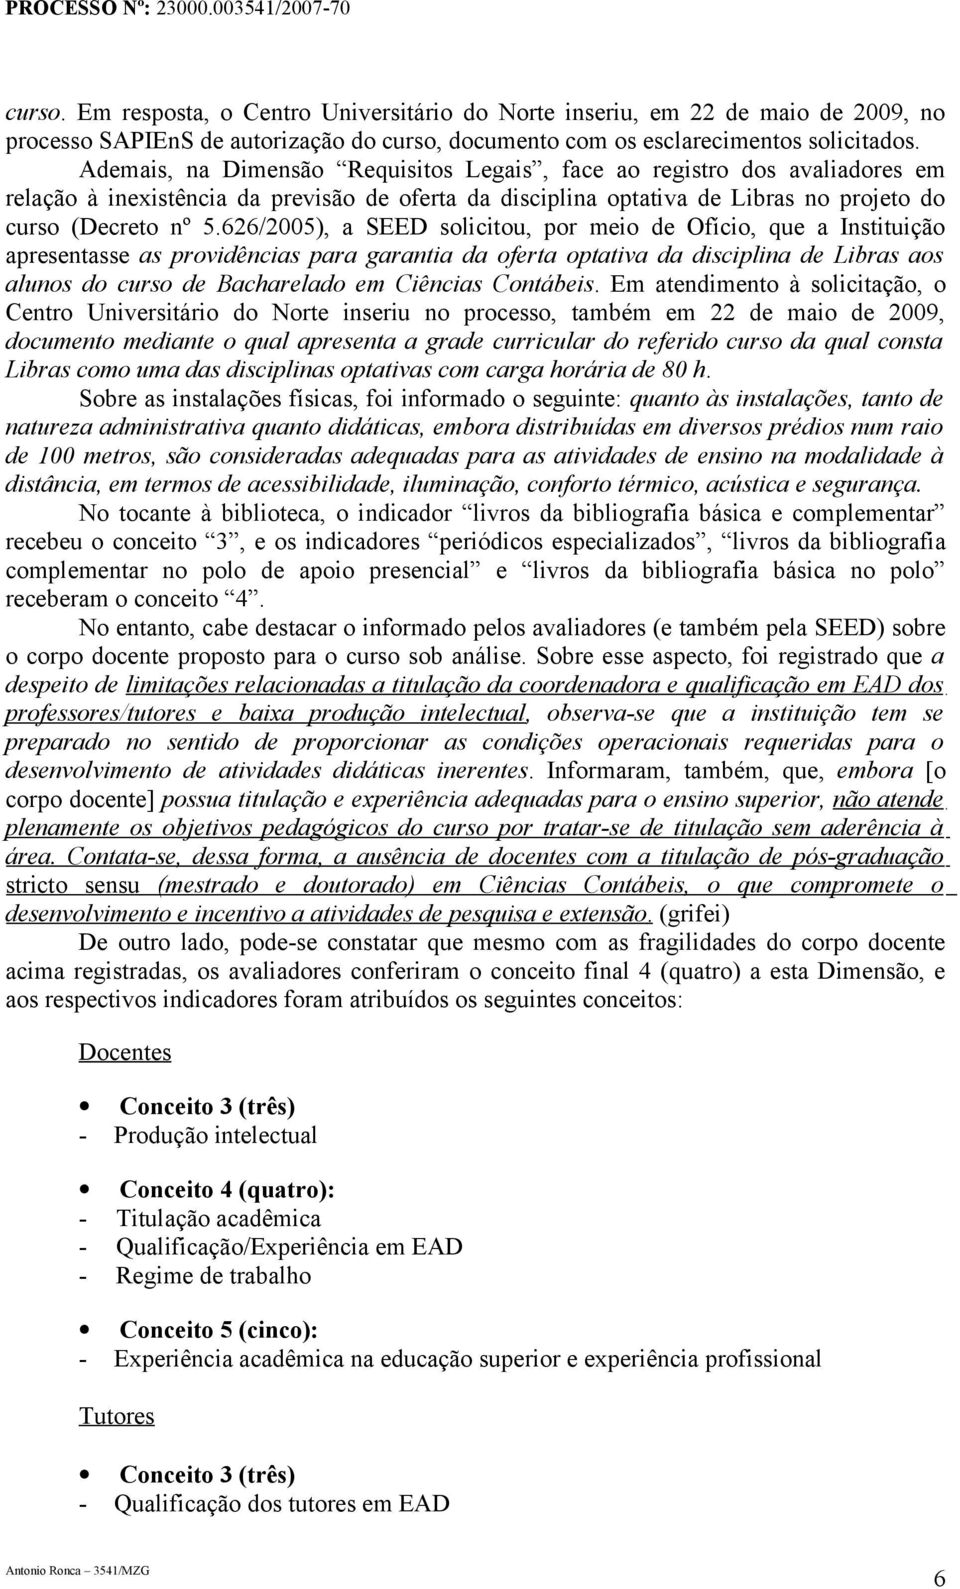 626/2005), a SEED solicitou, por meio de Ofício, que a Instituição apresentasse as providências para garantia da oferta optativa da disciplina de Libras aos alunos do curso de Bacharelado em Ciências